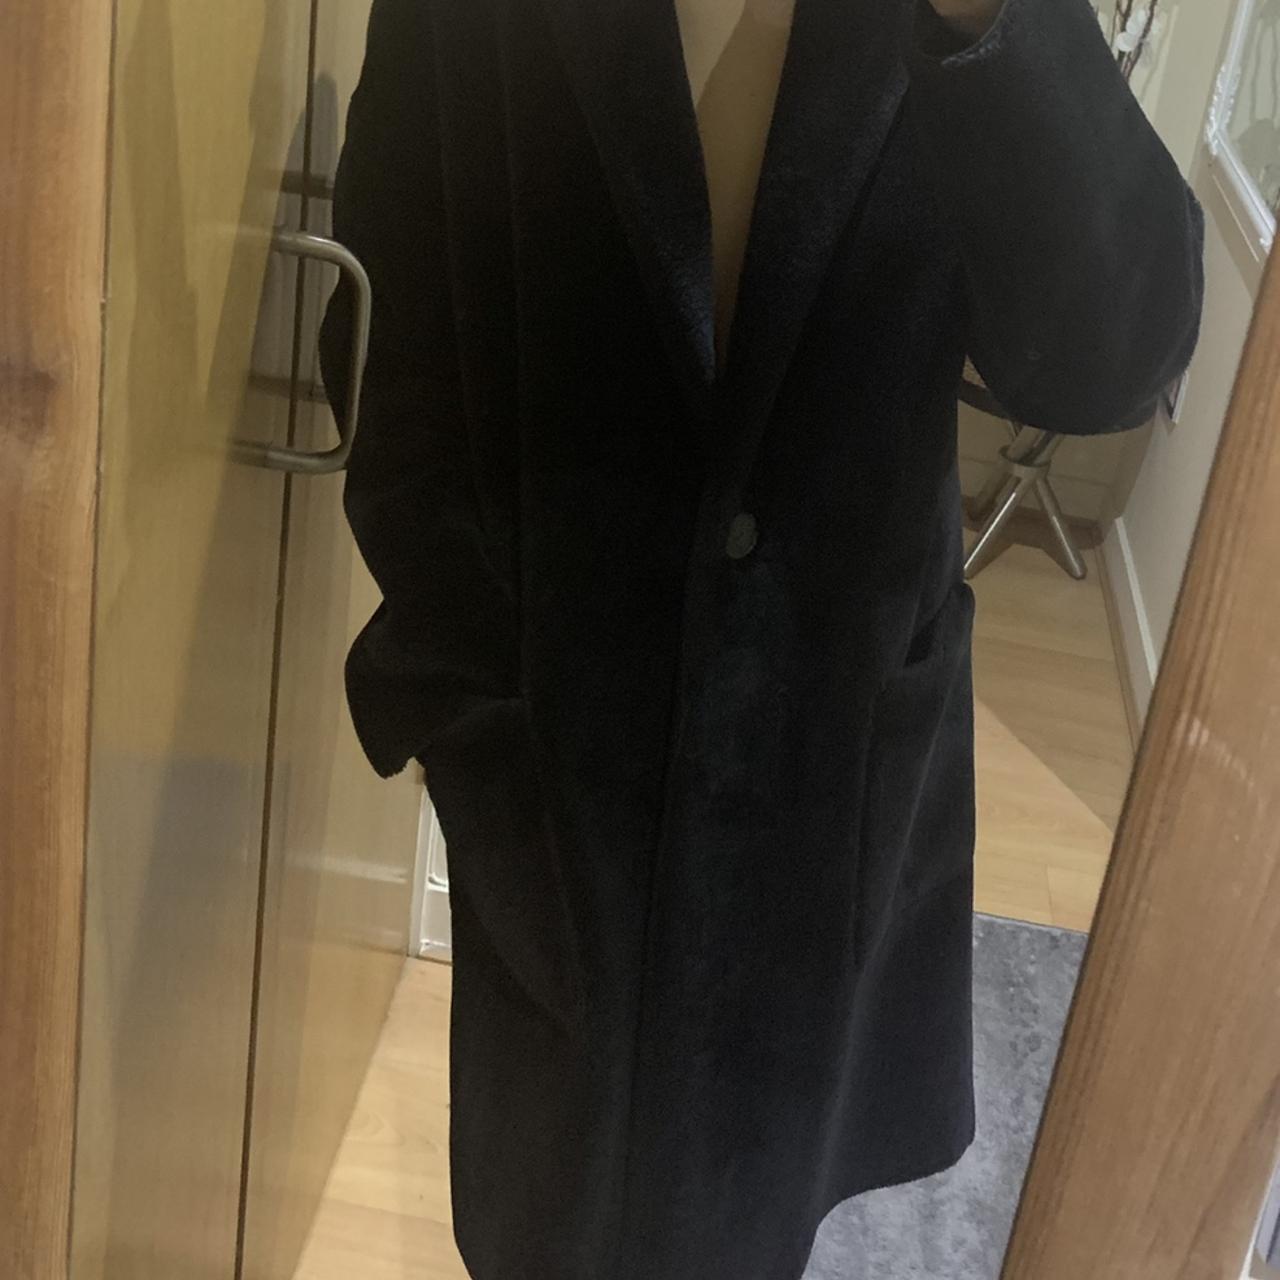 Zara Faux Fur Black Oversized Coat - Size S Will... - Depop